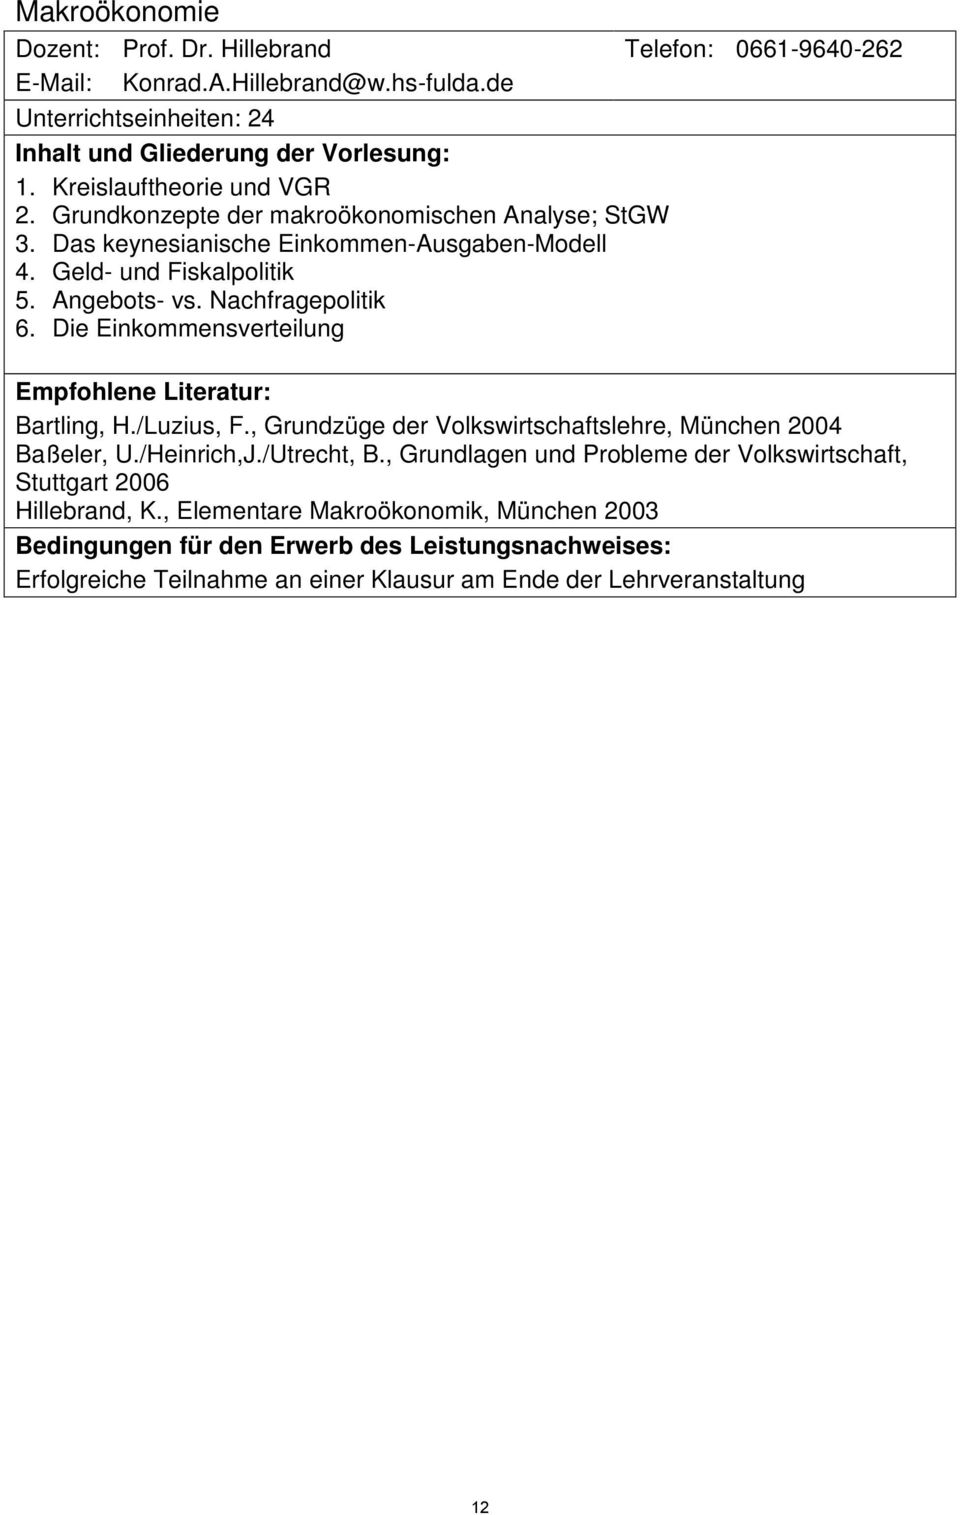 Die Einkommensverteilung Empfohlene Literatur: Bartling, H./Luzius, F., Grundzüge der Volkswirtschaftslehre, München 2004 Baßeler, U./Heinrich,J./Utrecht, B.